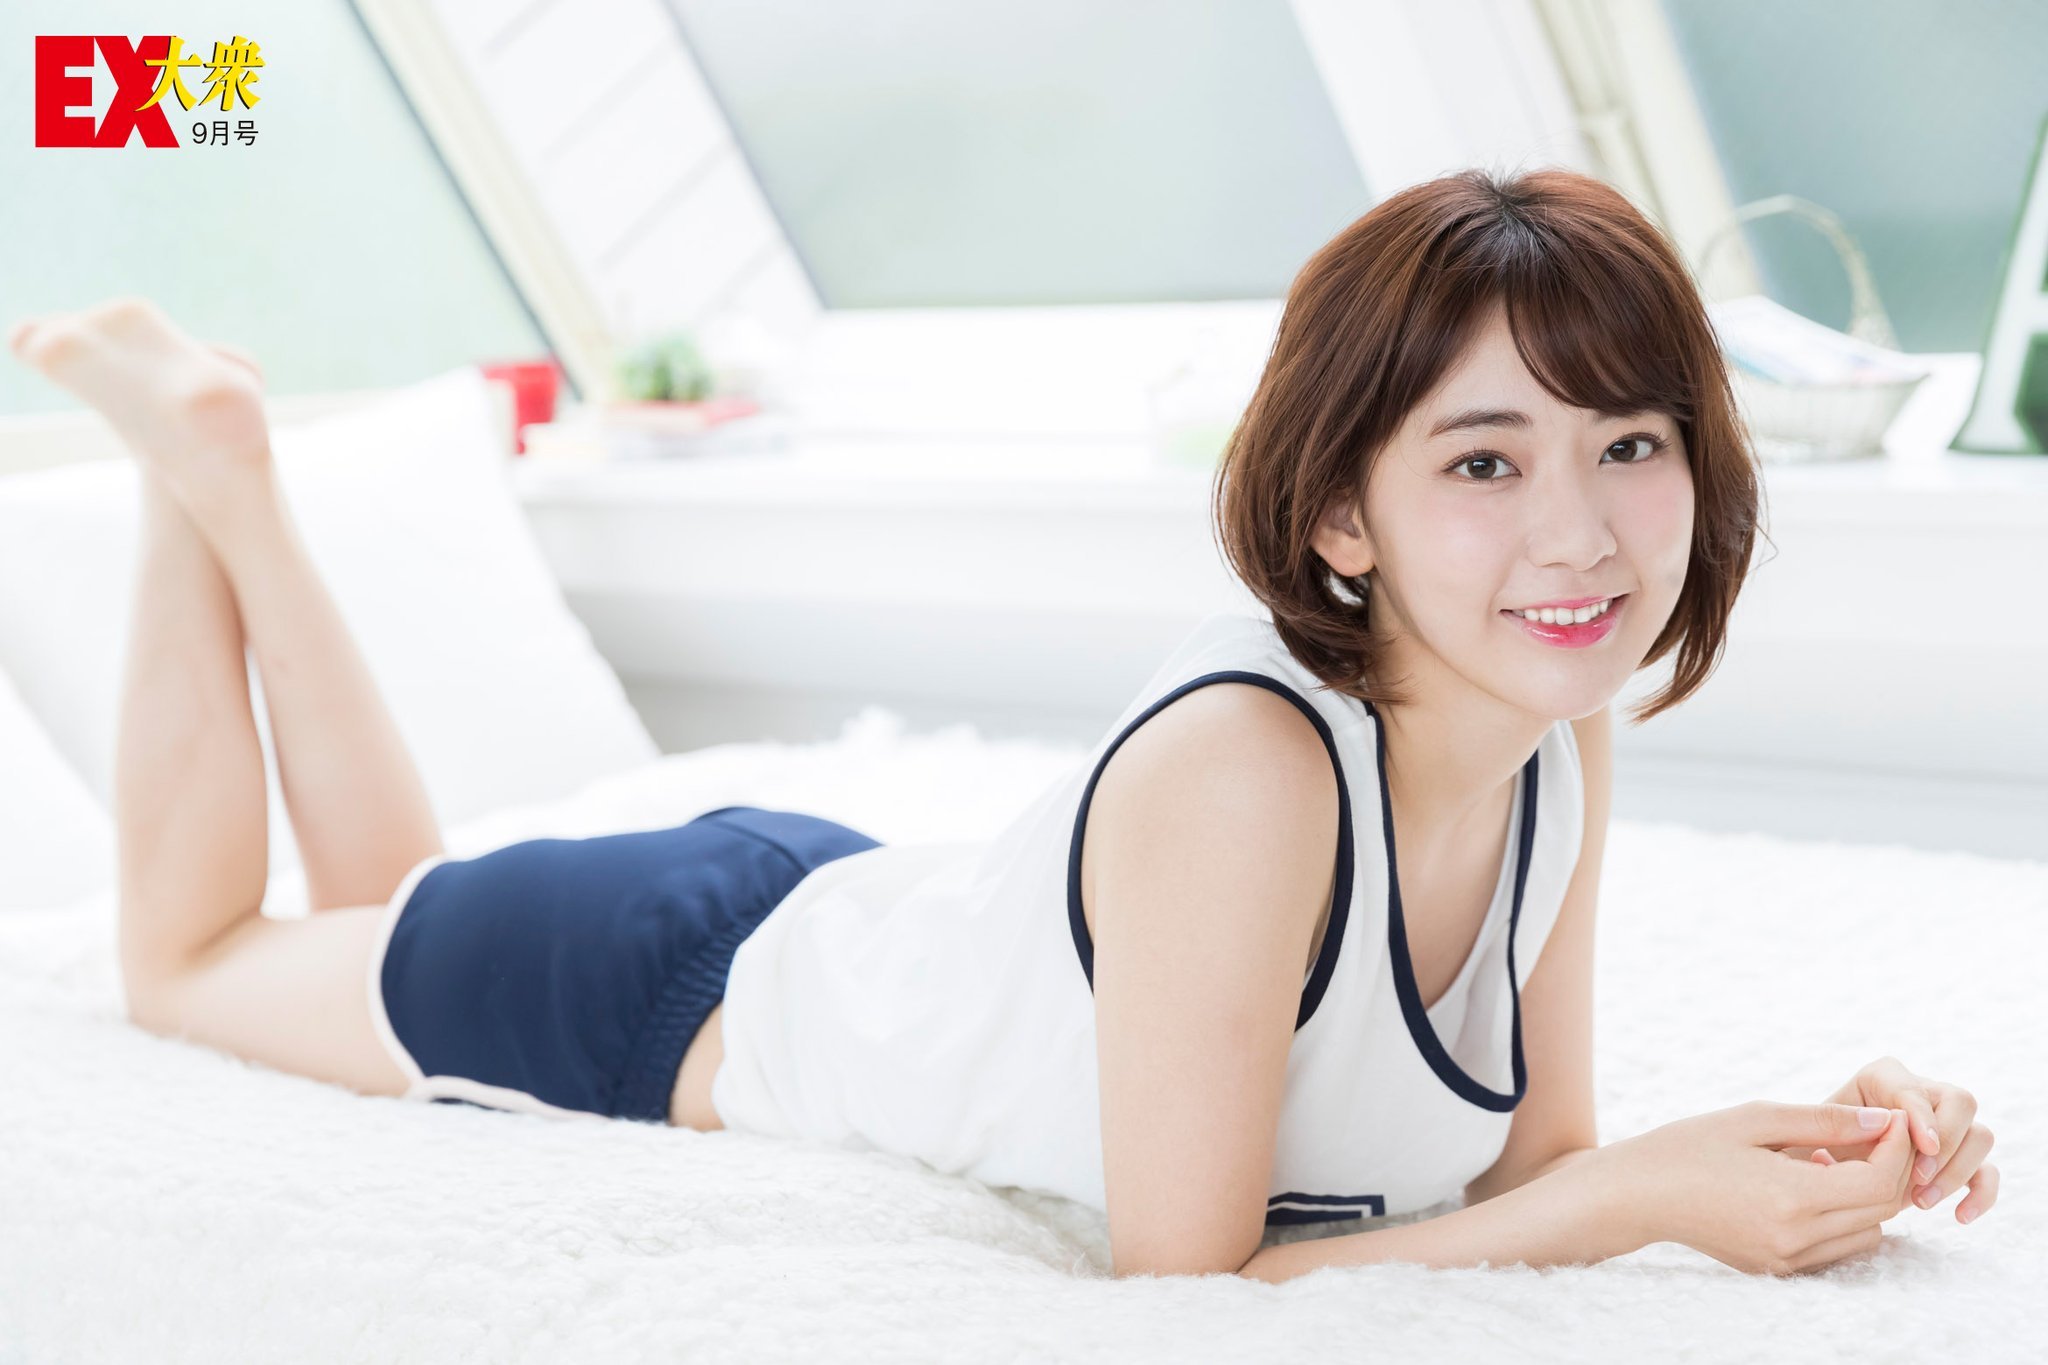 Sakura Miyawaki Legs Shirt Skirt Brown Hair Hands Model Brunette Barefoot Lying On Front Feet In The 2048x1365